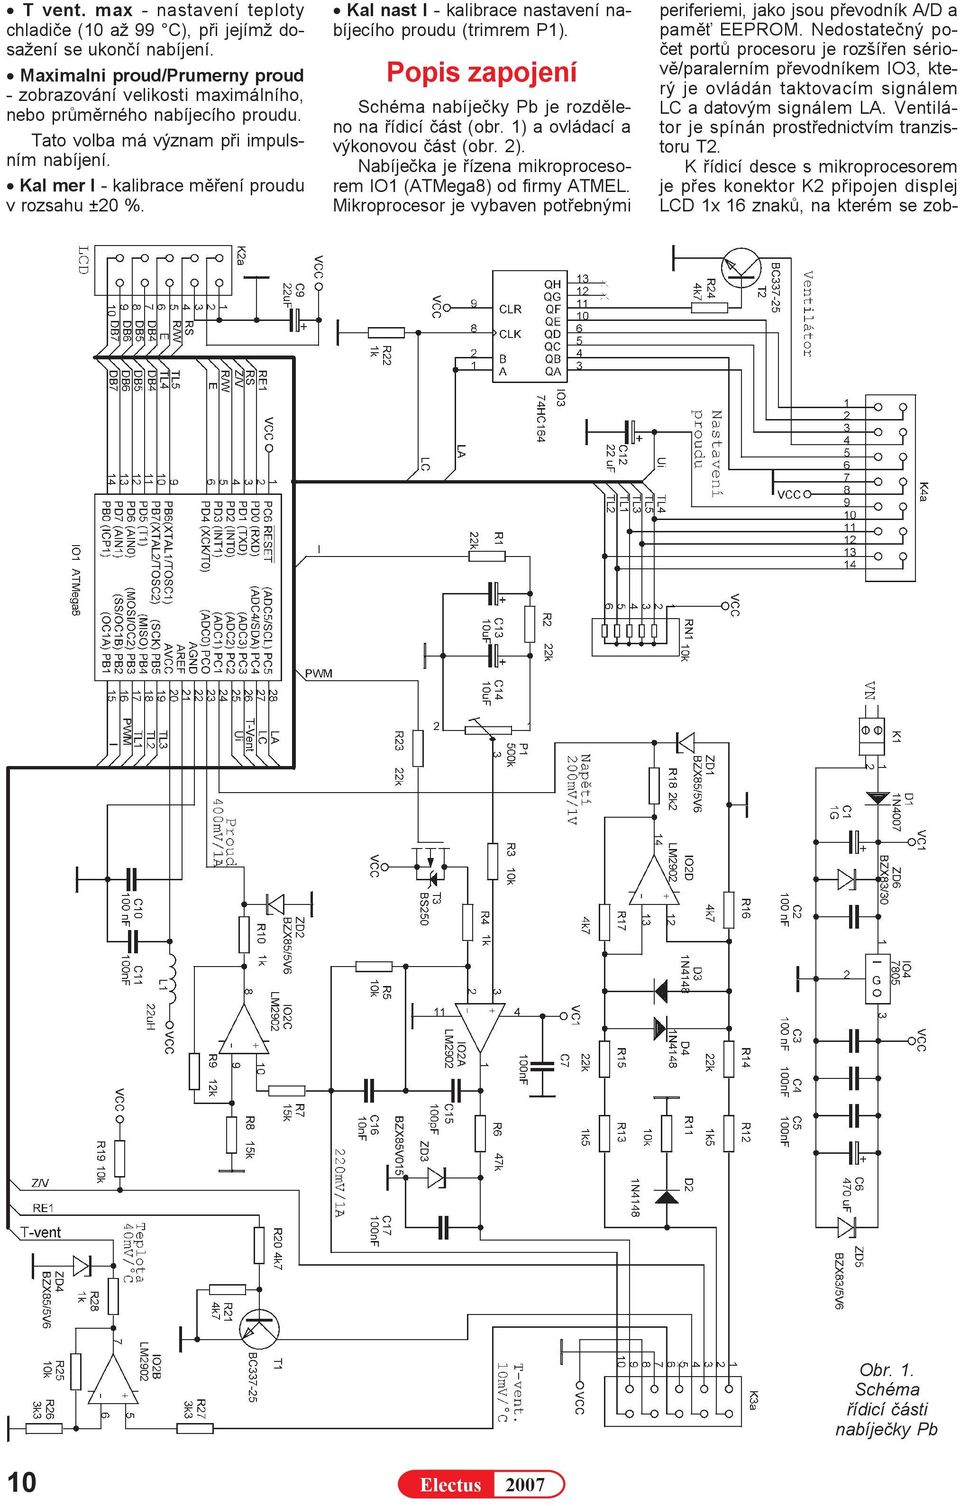 Popis zapojení Schéma nabíjeèky Pb je rozdìleno na øídicí èást (obr. 1) a ovládací a výkonovou èást (obr. 2). Nabíjeèka je øízena mikroprocesorem IO1 (ATMega8) od firmy ATMEL.